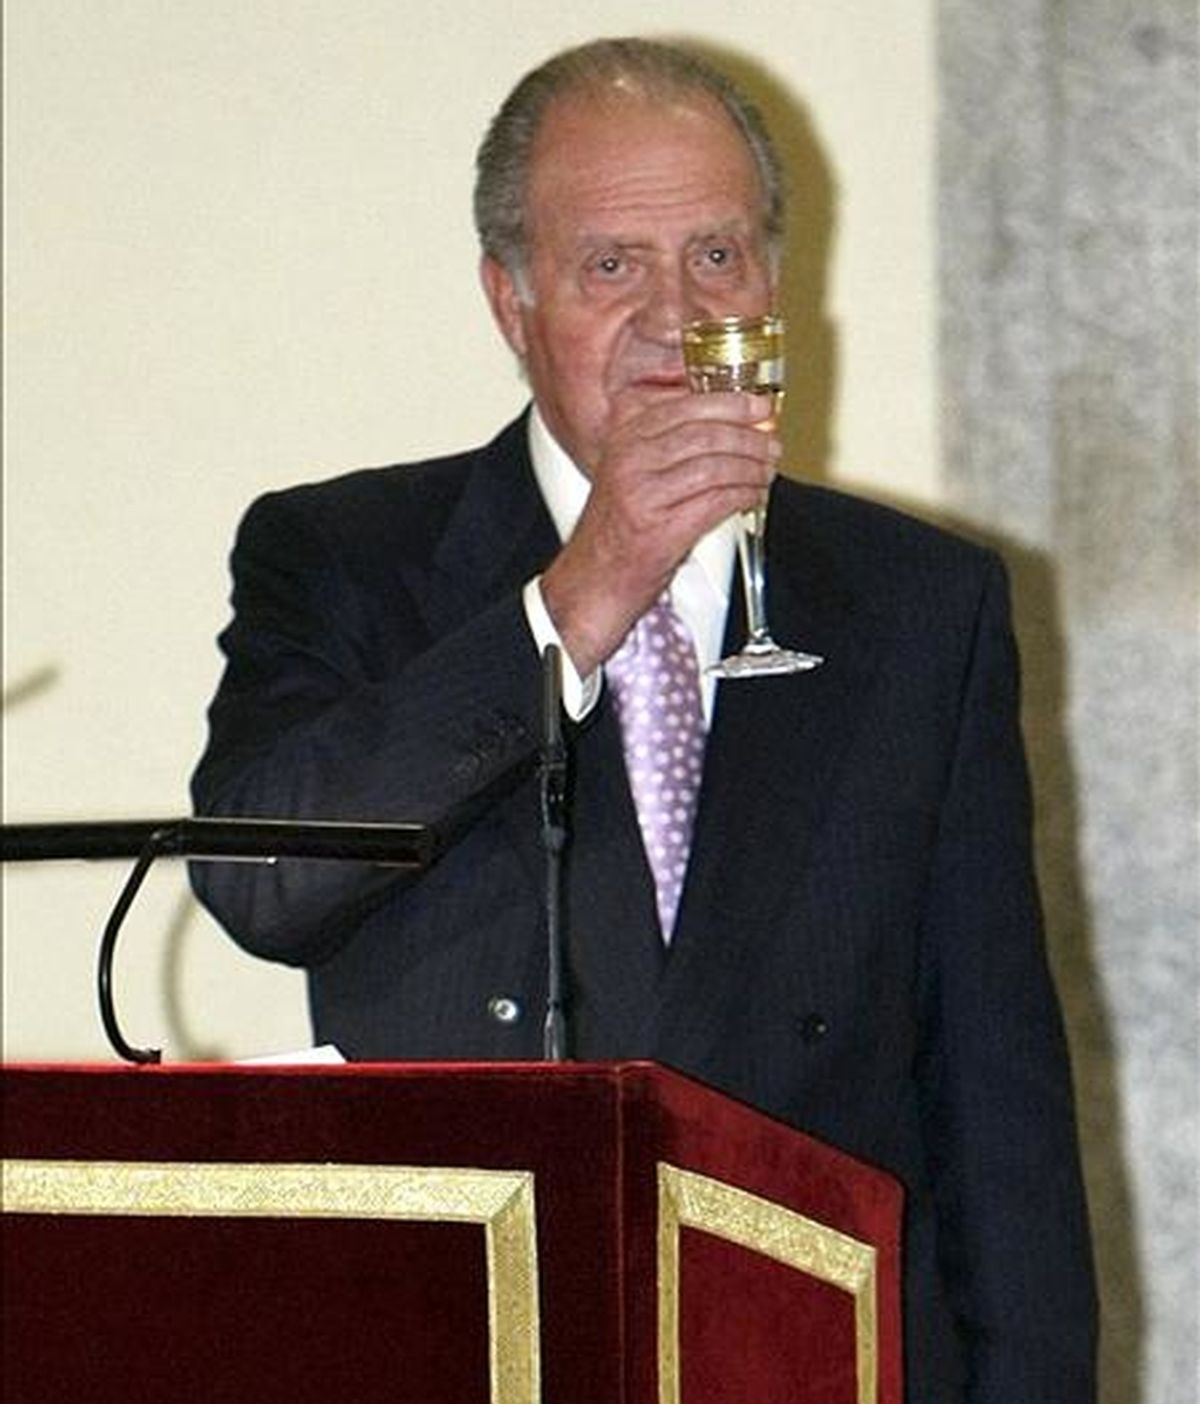 El rey Juan Carlos, durante un brindis tras su discurso en el palacio de El Pardo el pasado mes de noviembre, donde presidió la reunión anual del Patronato del Instituto Cervantes. EFE/Archivo